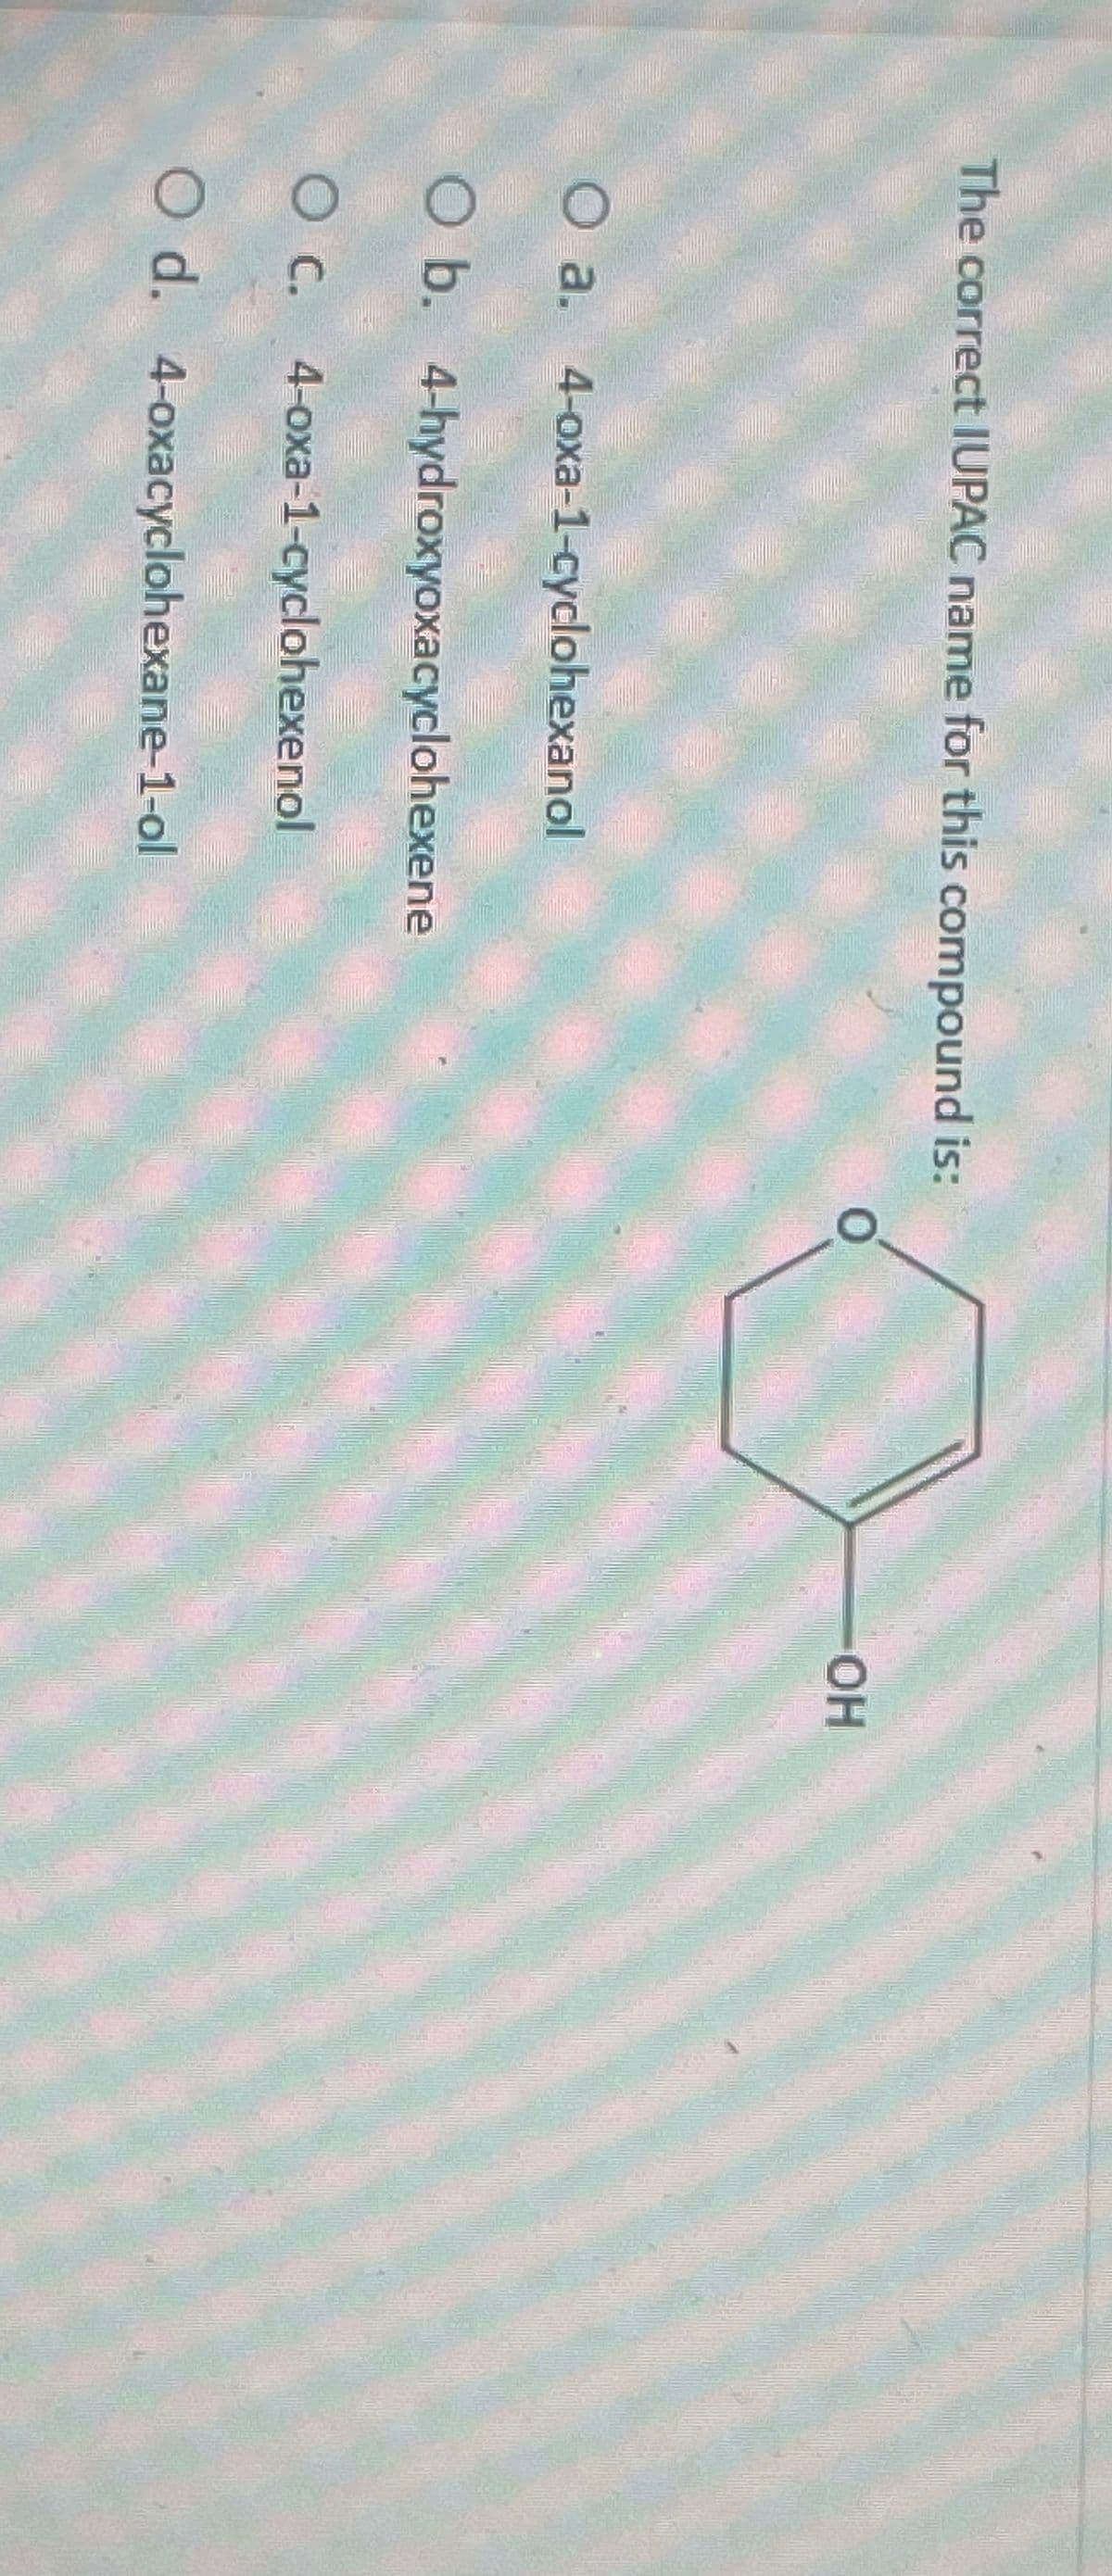 The correct IUPAC name for this compound is:
O a. 4-oxa-1-cyclohexanol
O b. 4-hydroxyoxacyclohexene
O c. 4-oxa-1-cyclohexenol
O d. 4-oxacyclohexane-1-ol
OH